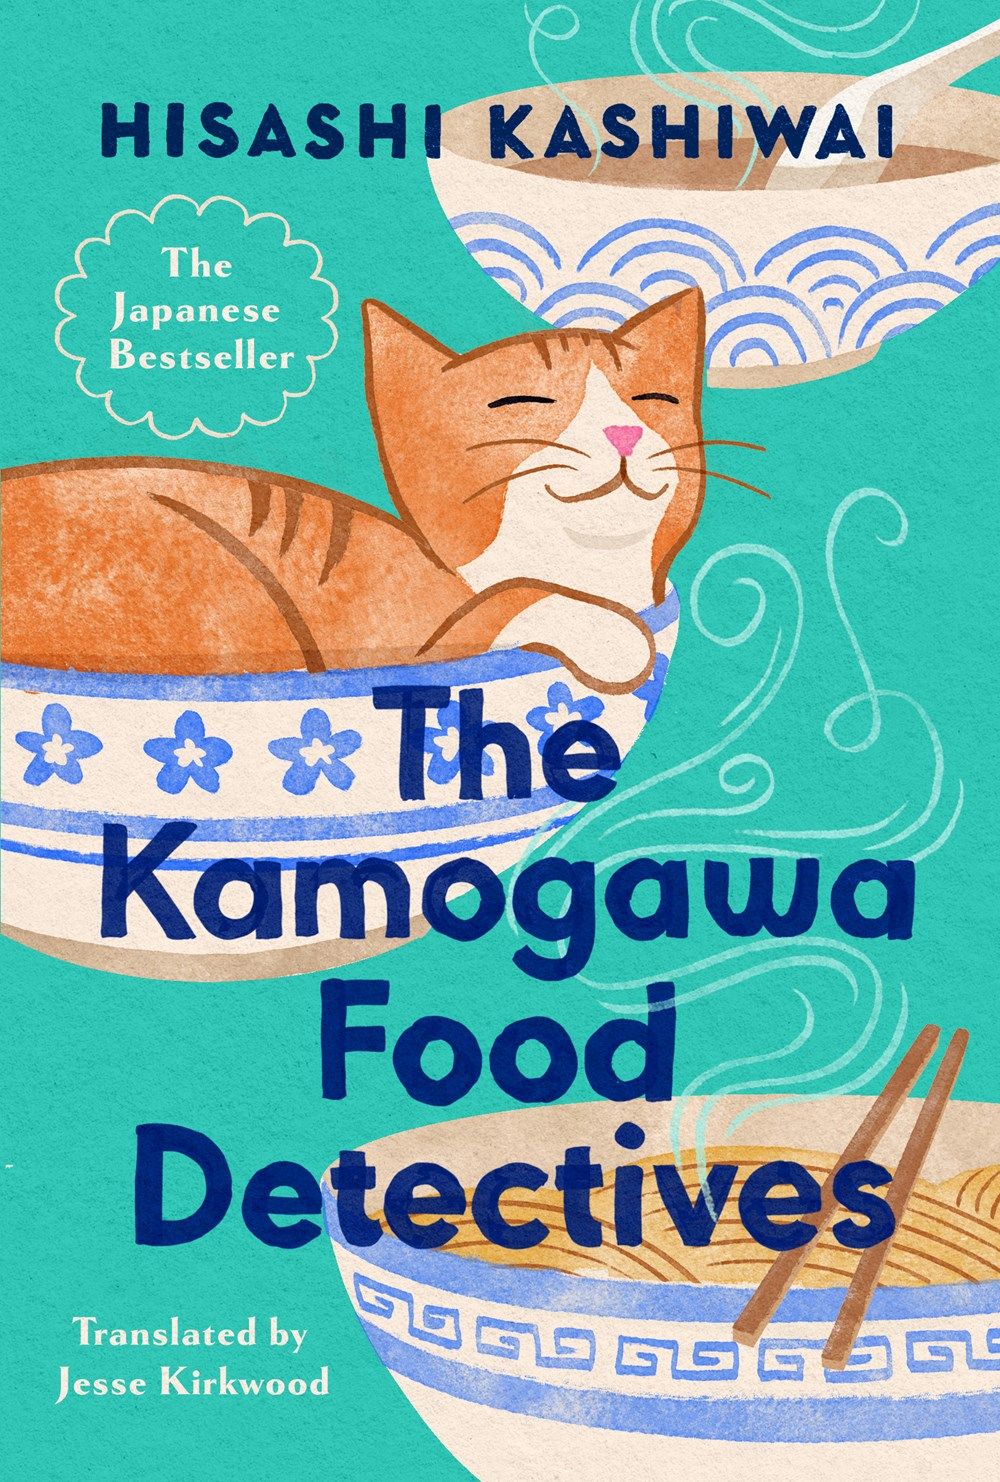 La couverture des détectives alimentaires de Kamogawa